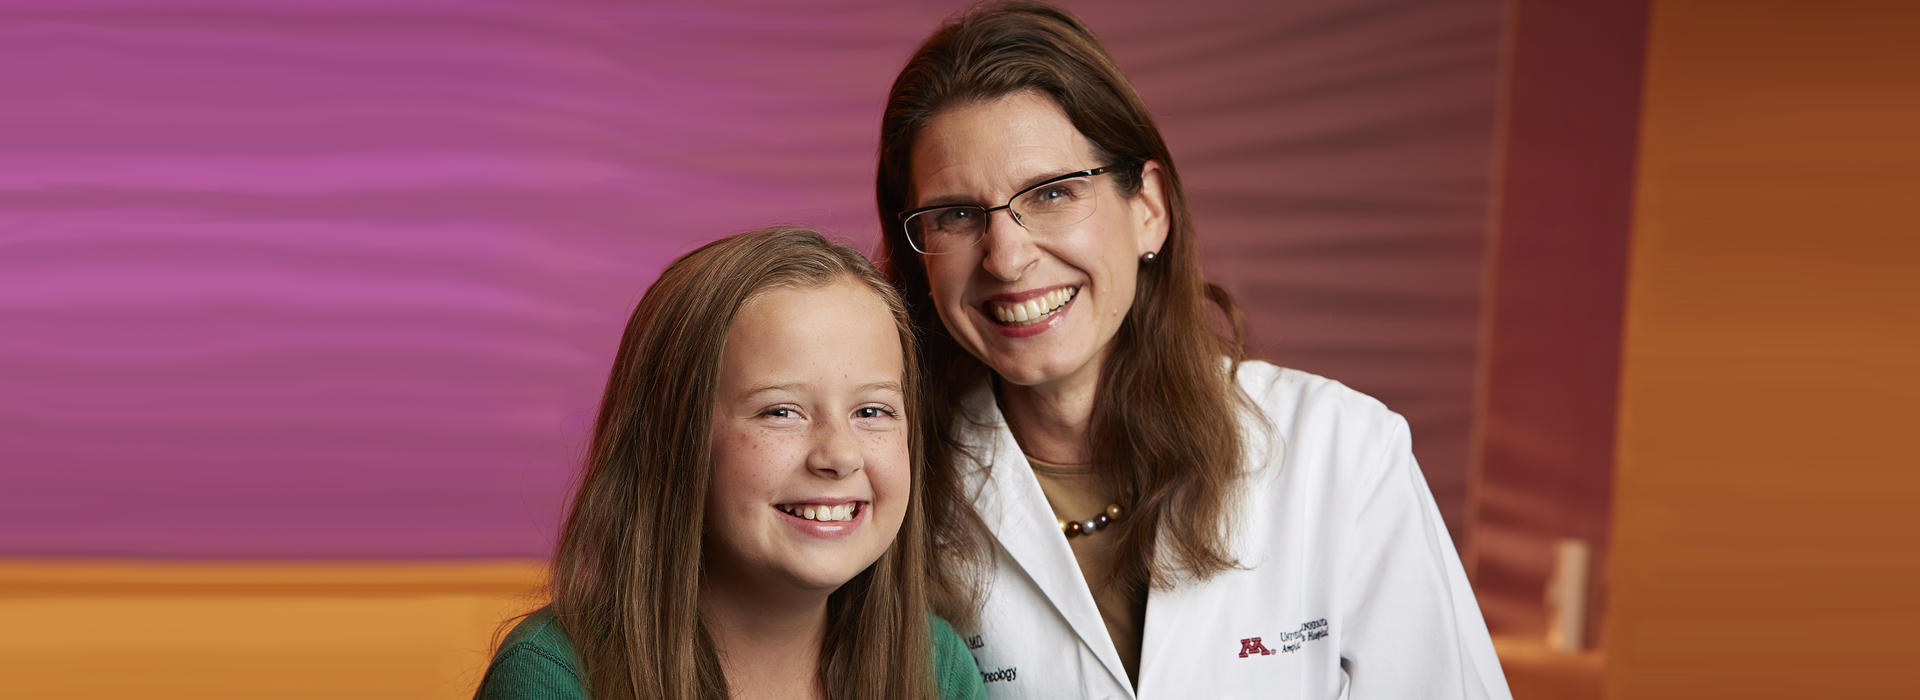 Dr. Brenda Weigel & patient